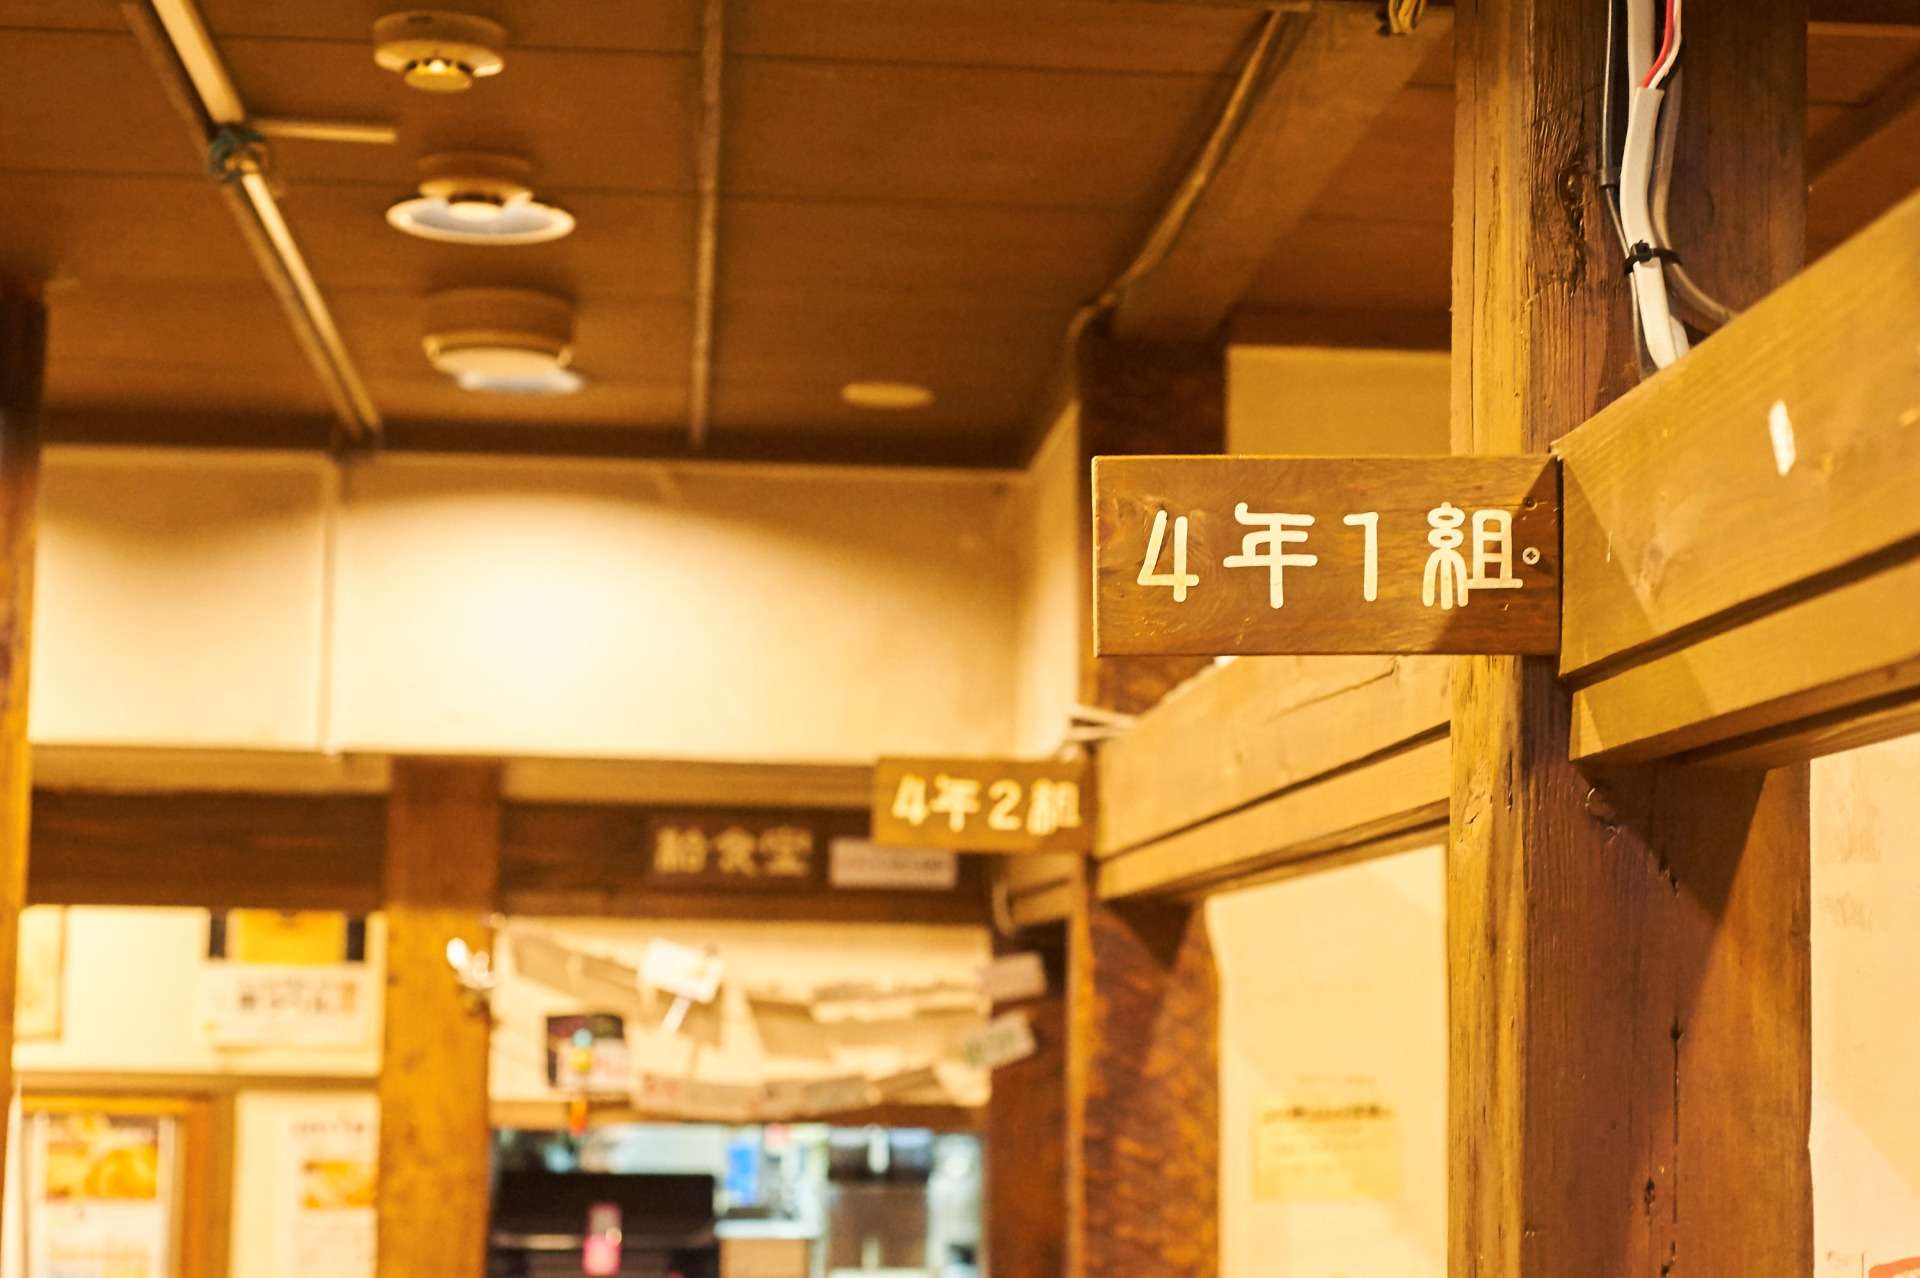 大宮のラーメン･らぅ麺 ガラ喰楽学校の口コミ情報